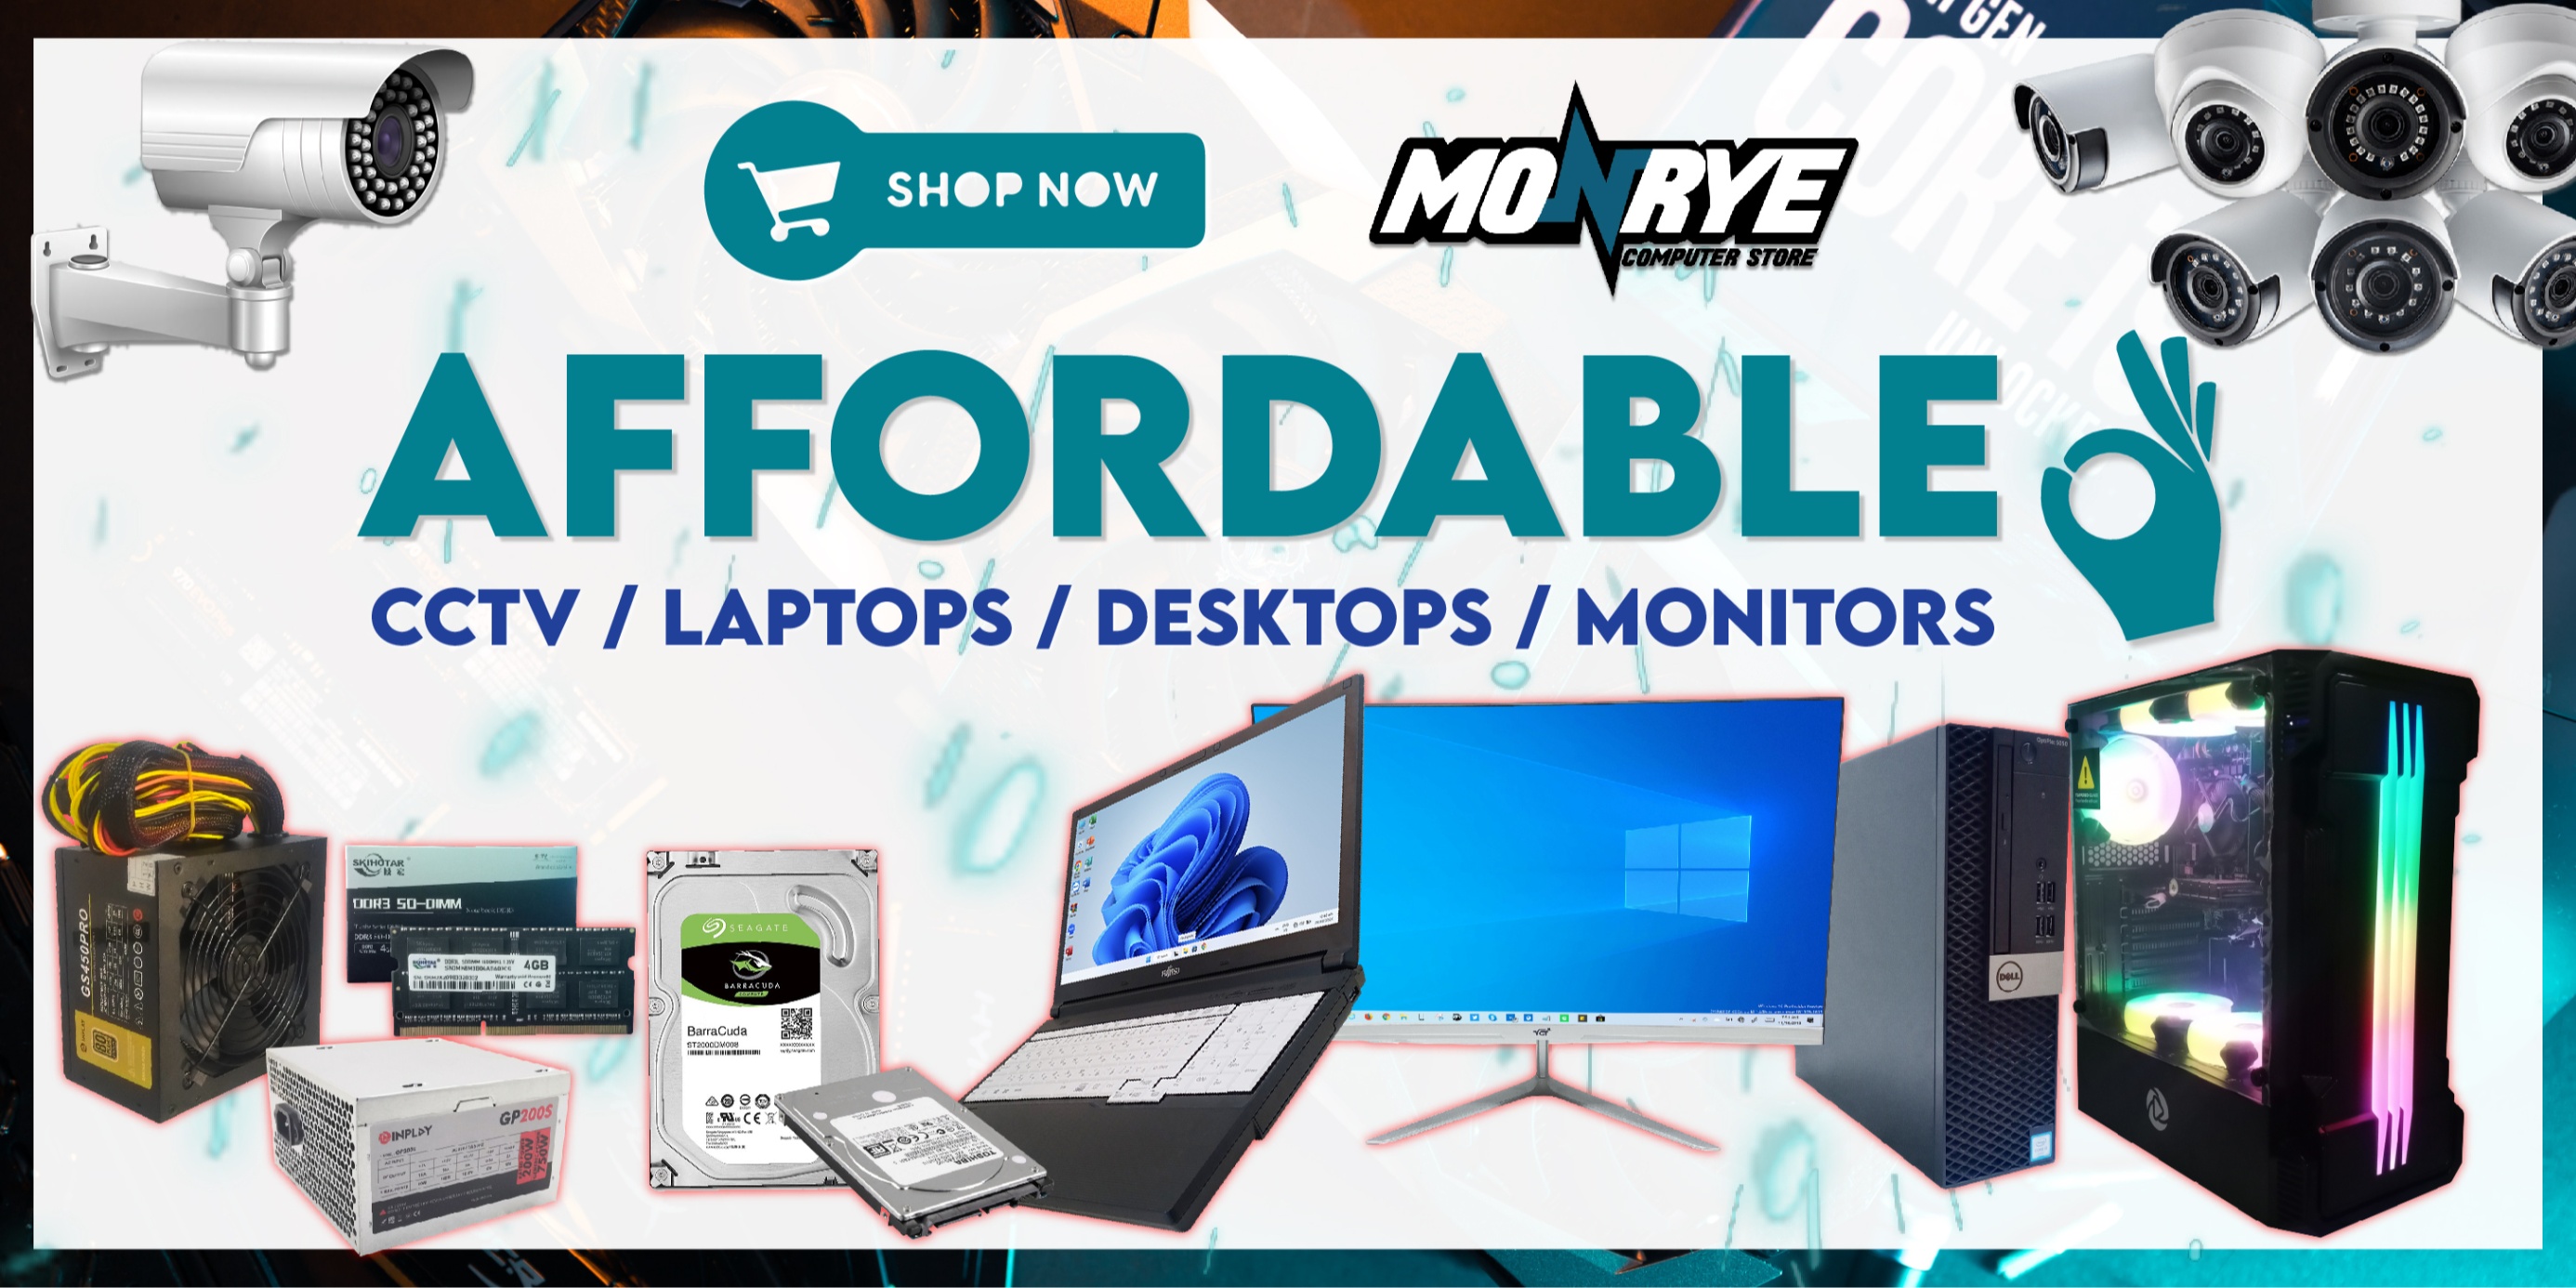 Monrye Computer Store